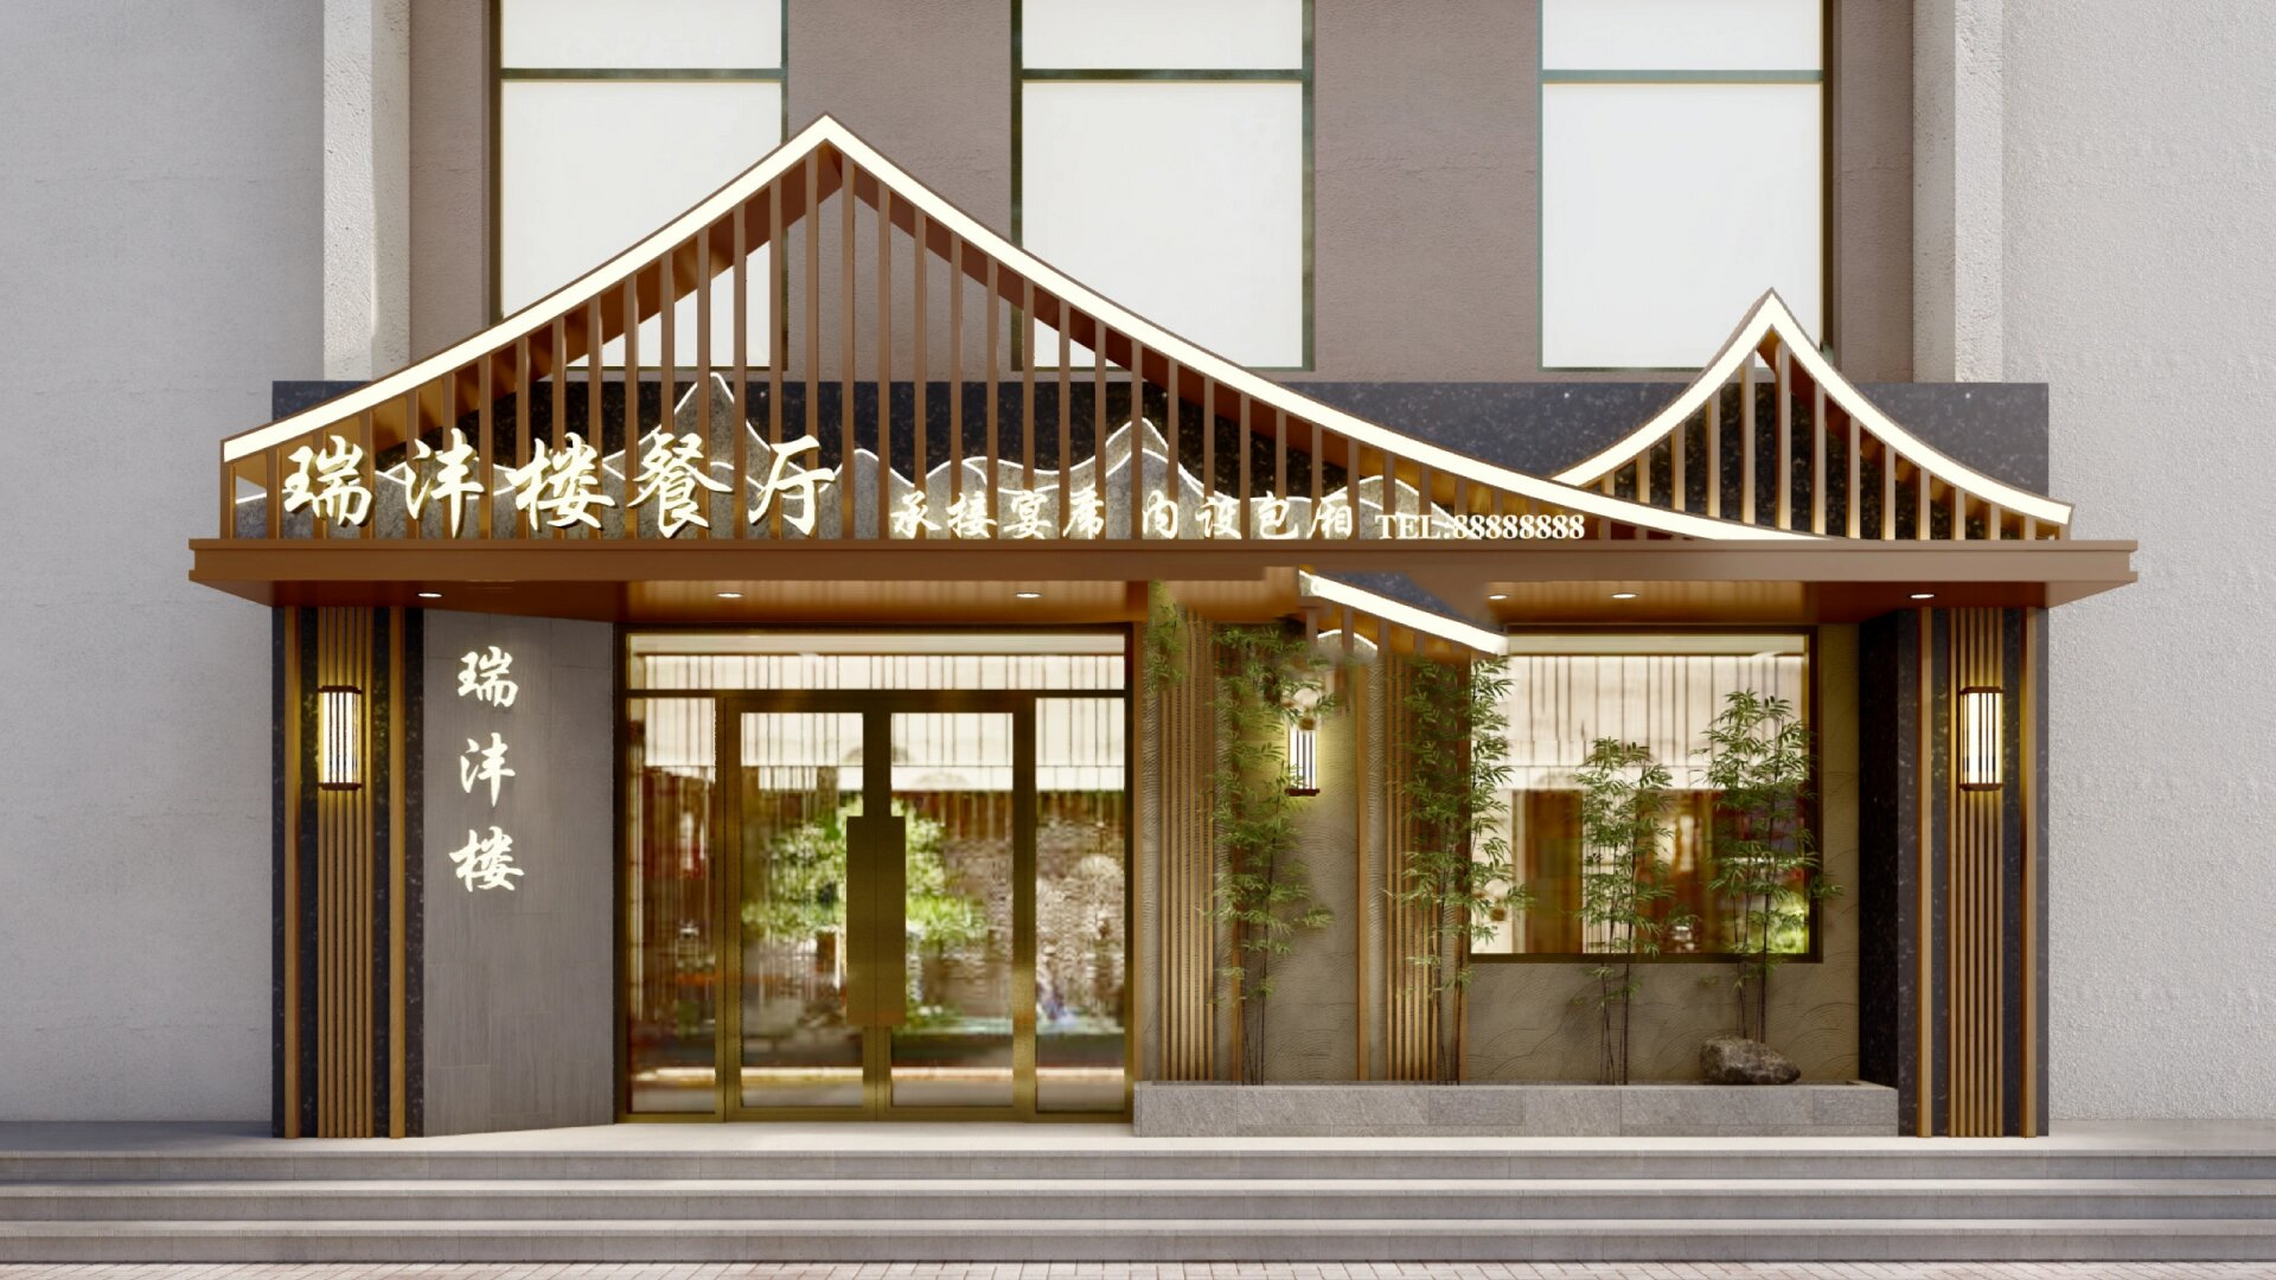 中式风格中餐厅门头招牌设计 饭店门头 餐饮店门头 中餐馆门头